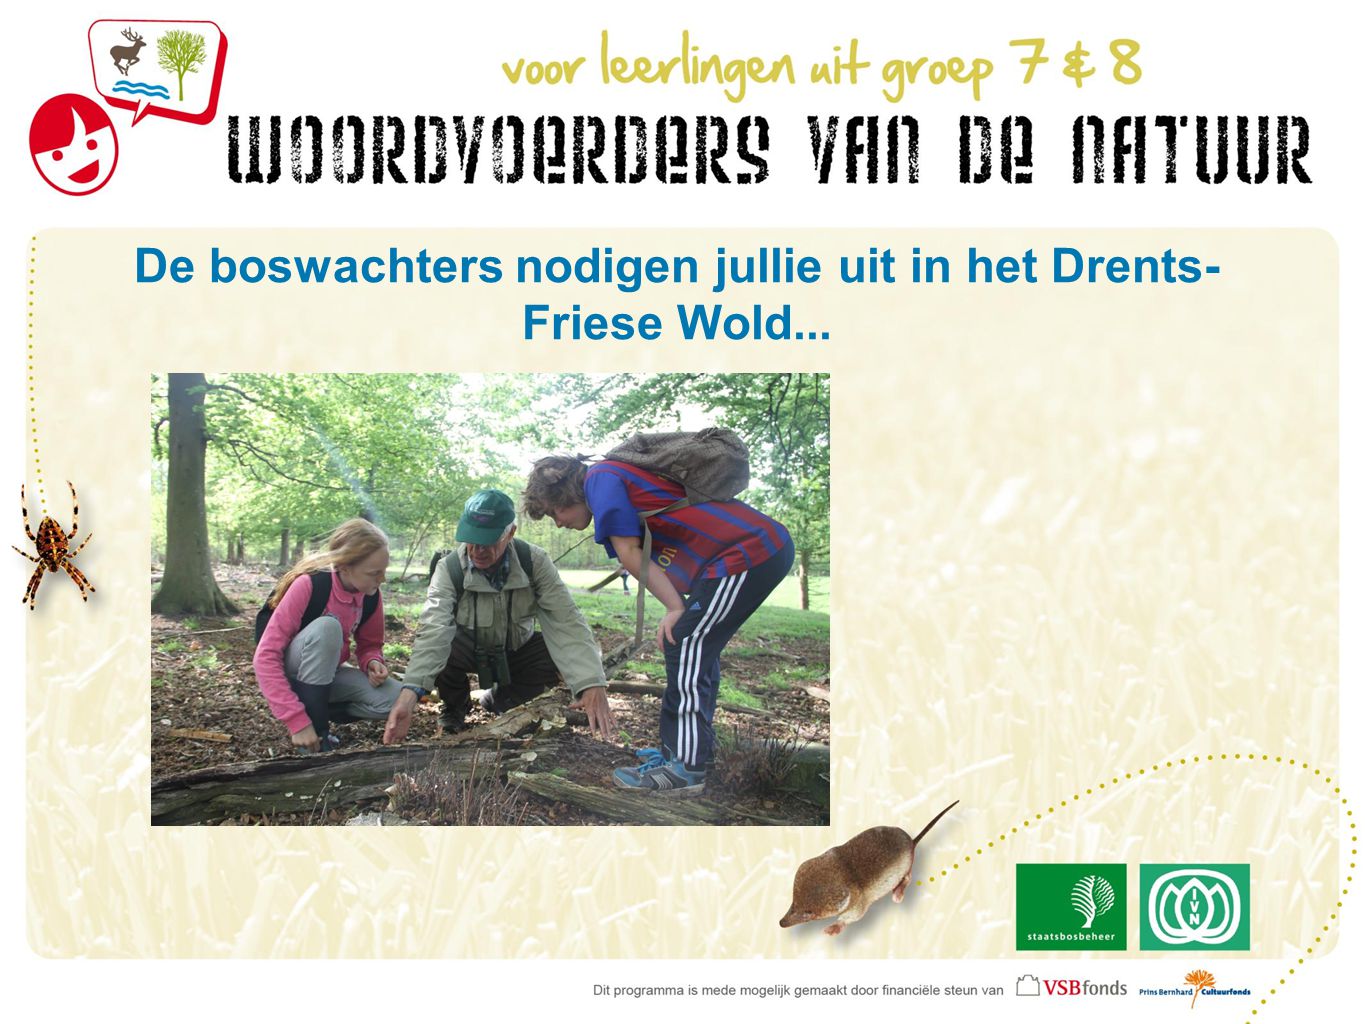 De boswachters nodigen jullie uit in het Drents- Friese Wold...